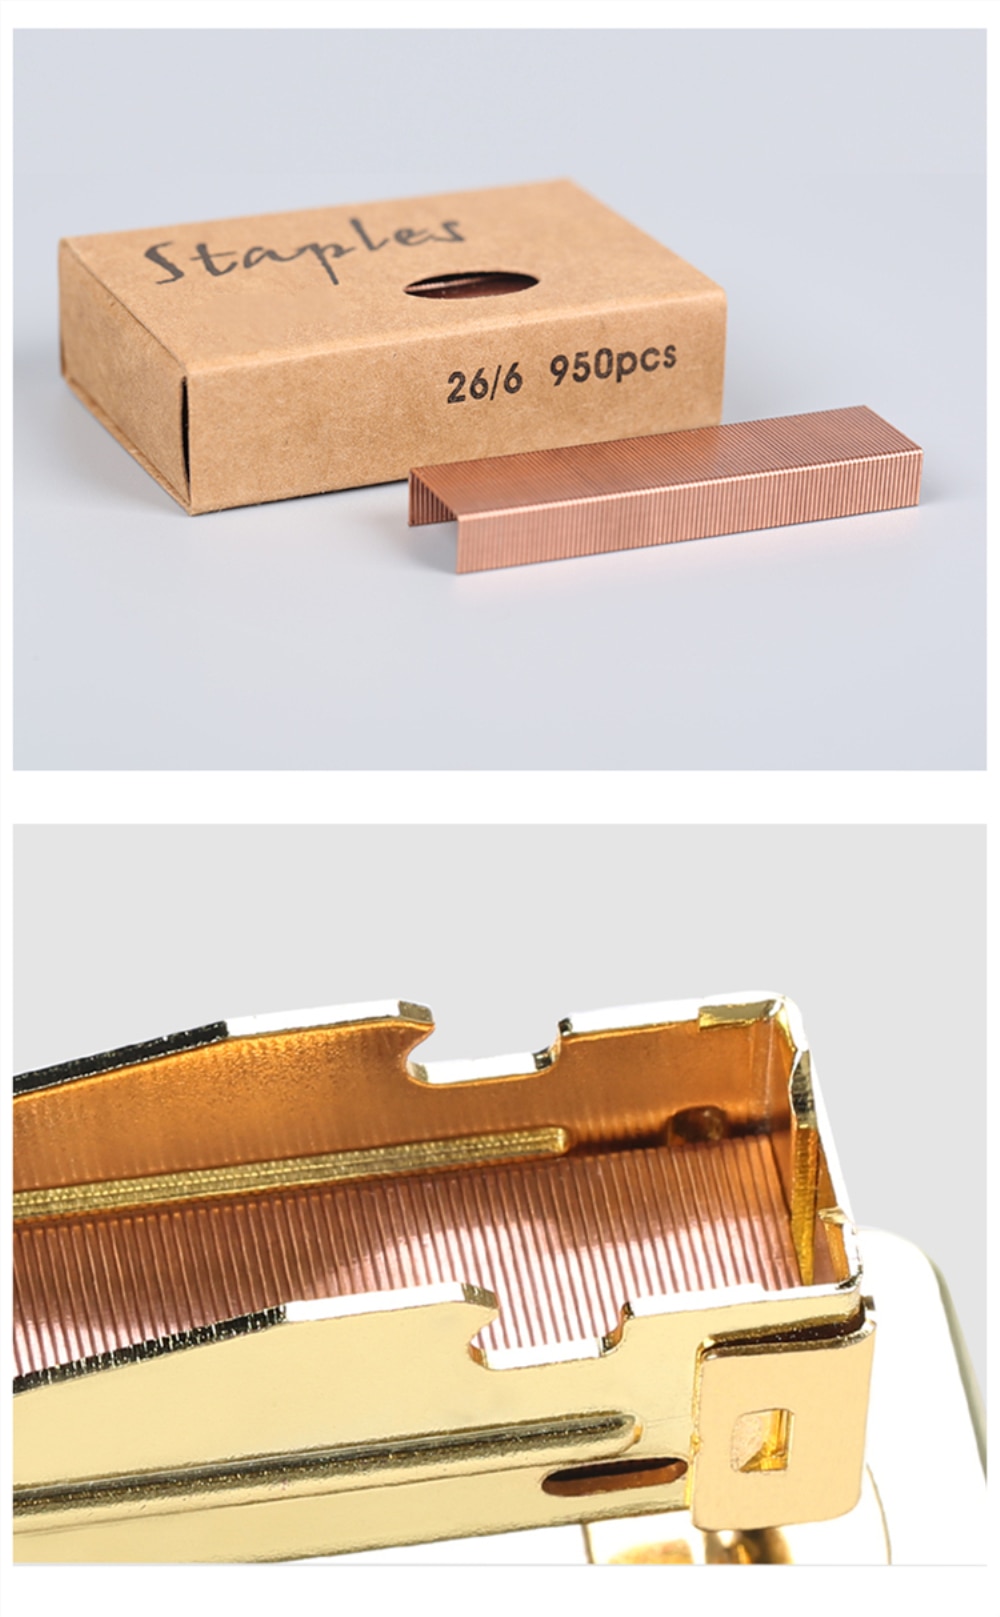 Hæfteklammer i rose guld standard hæftemaskine påfyldning 26/6 størrelse 950 hæfteklammer pr. æske til kontorskolehæftning papirvarer